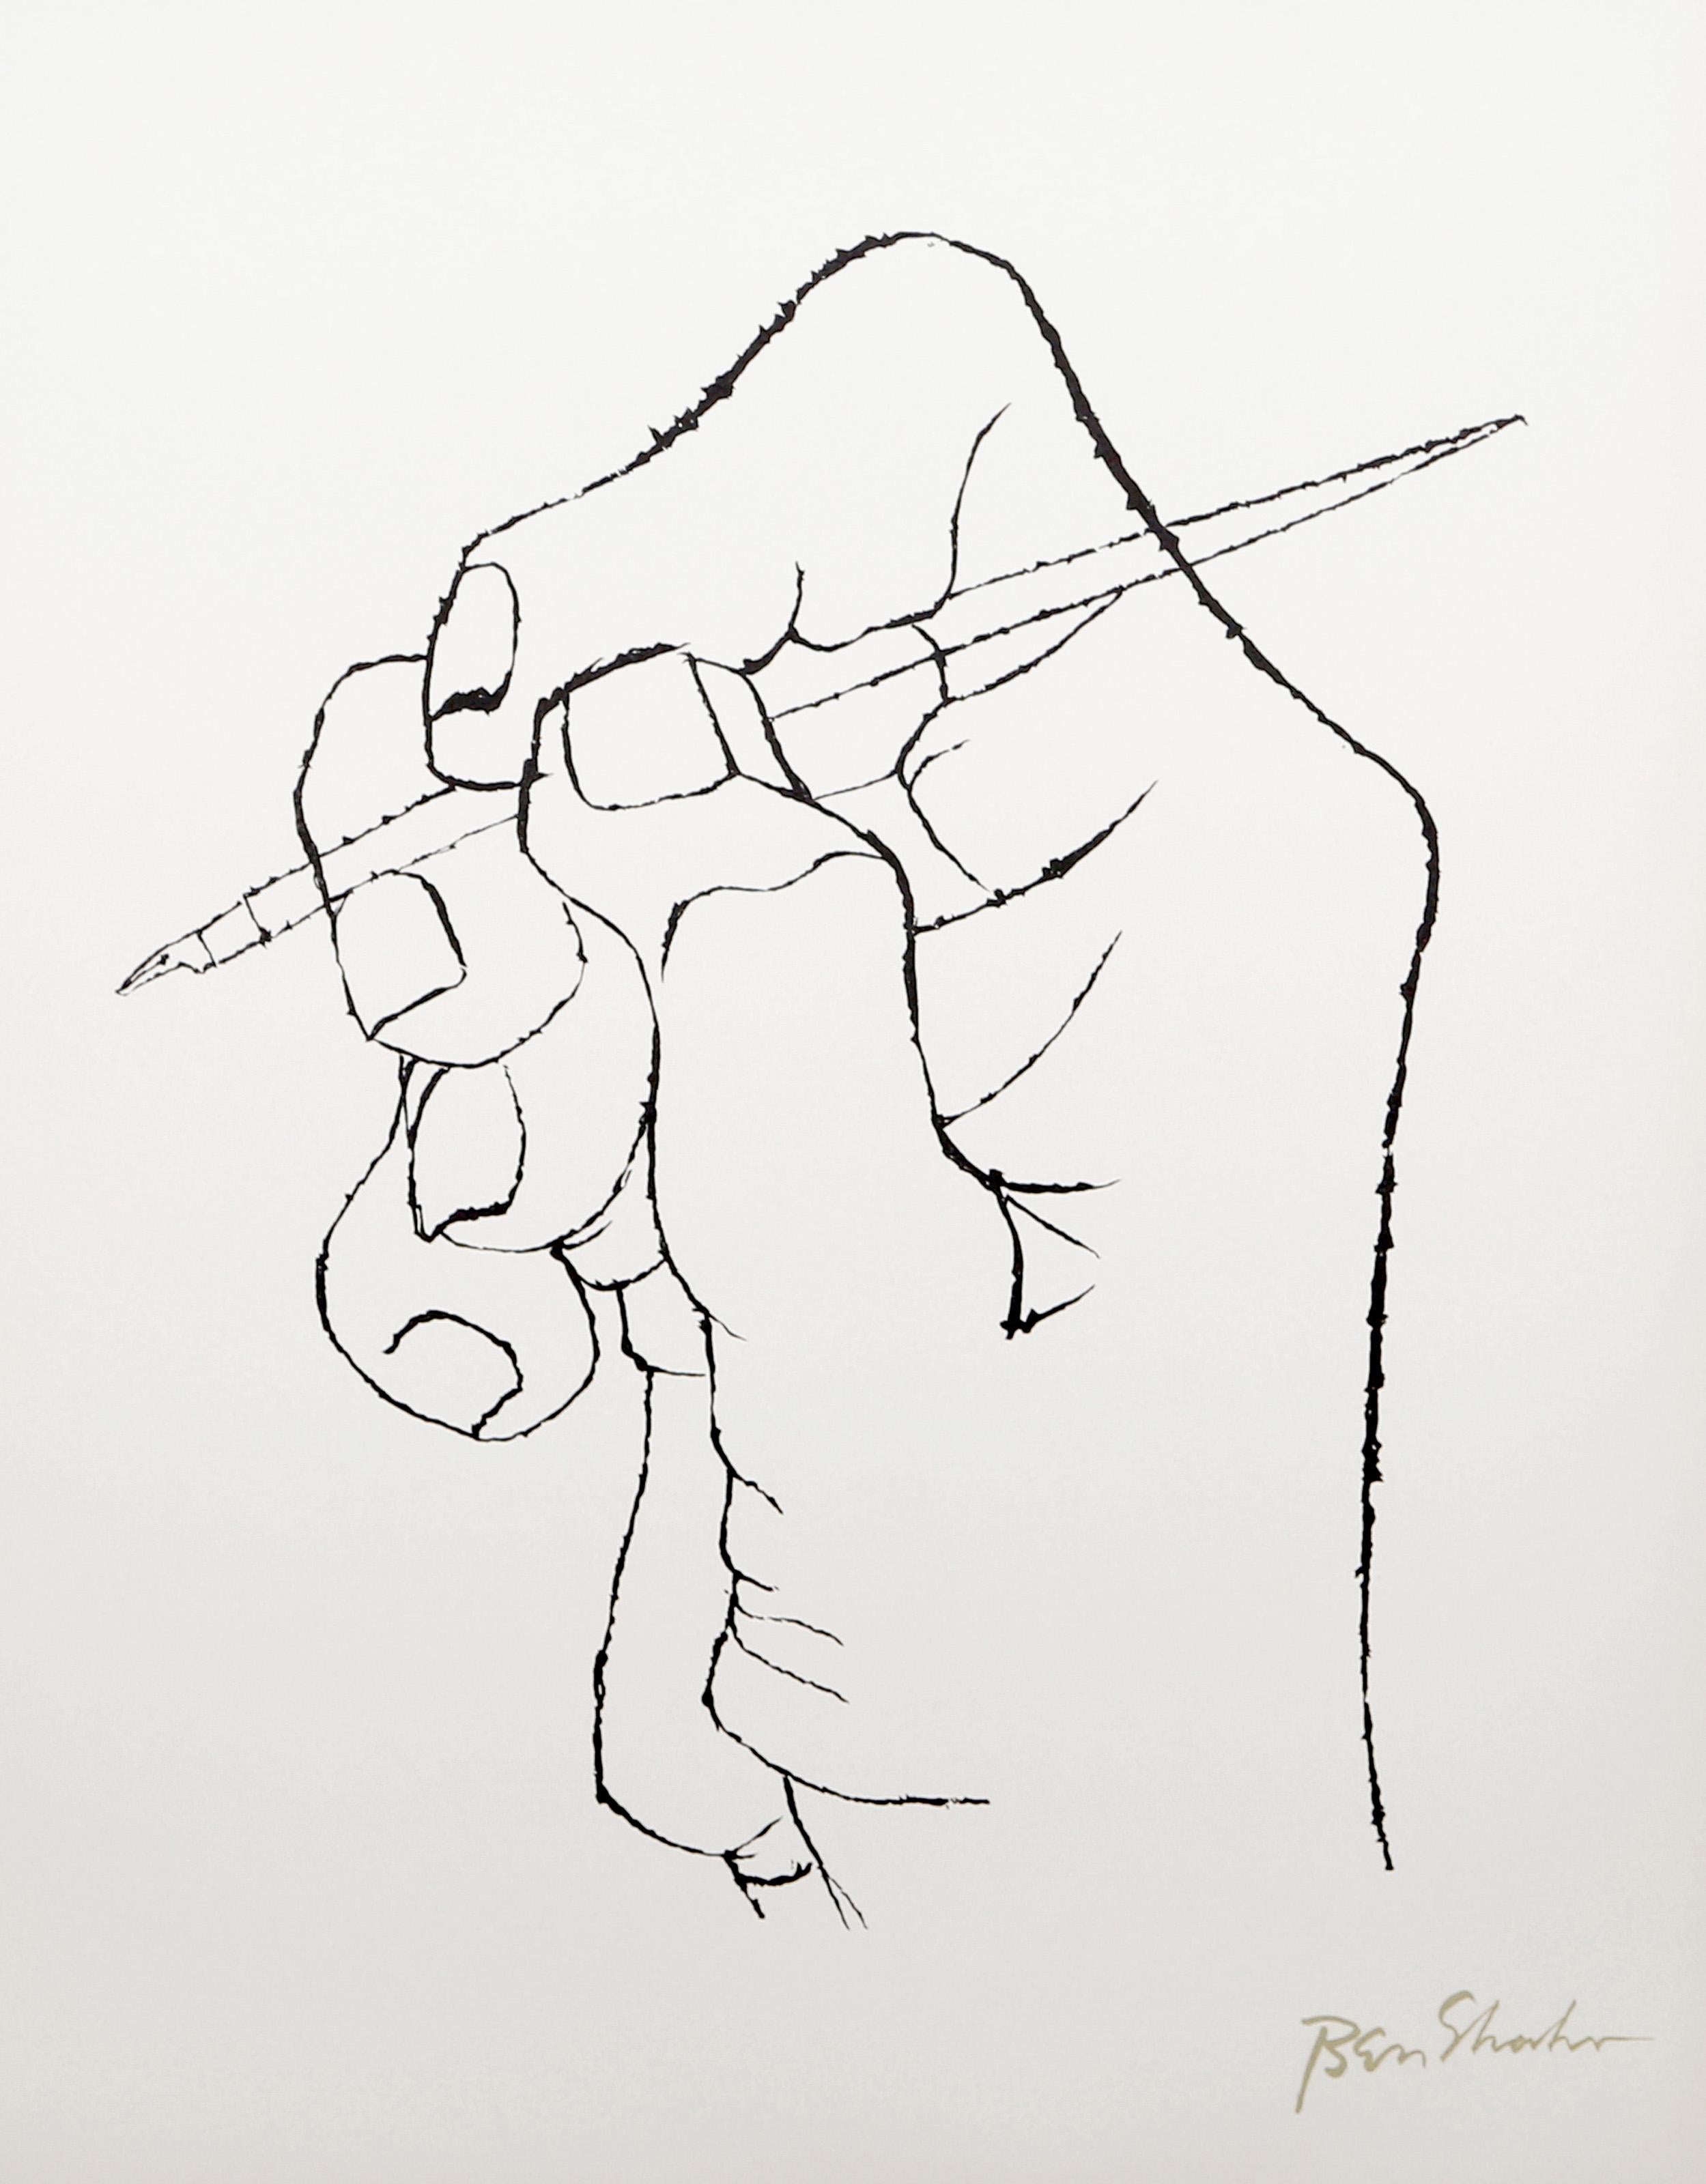 Künstler: Ben Shahn, Amerikaner (1898 - 1969)
Titel: Das erste Wort des Verses entspringt der Rilke-Mappe
Jahr: 1968
Medium: Lithographie auf Arches, in der Platte signiert
Auflage: 750
Größe: 22,5 x 17,75 Zoll (57,15 x 45,09 cm)

Druckerei: Atelier